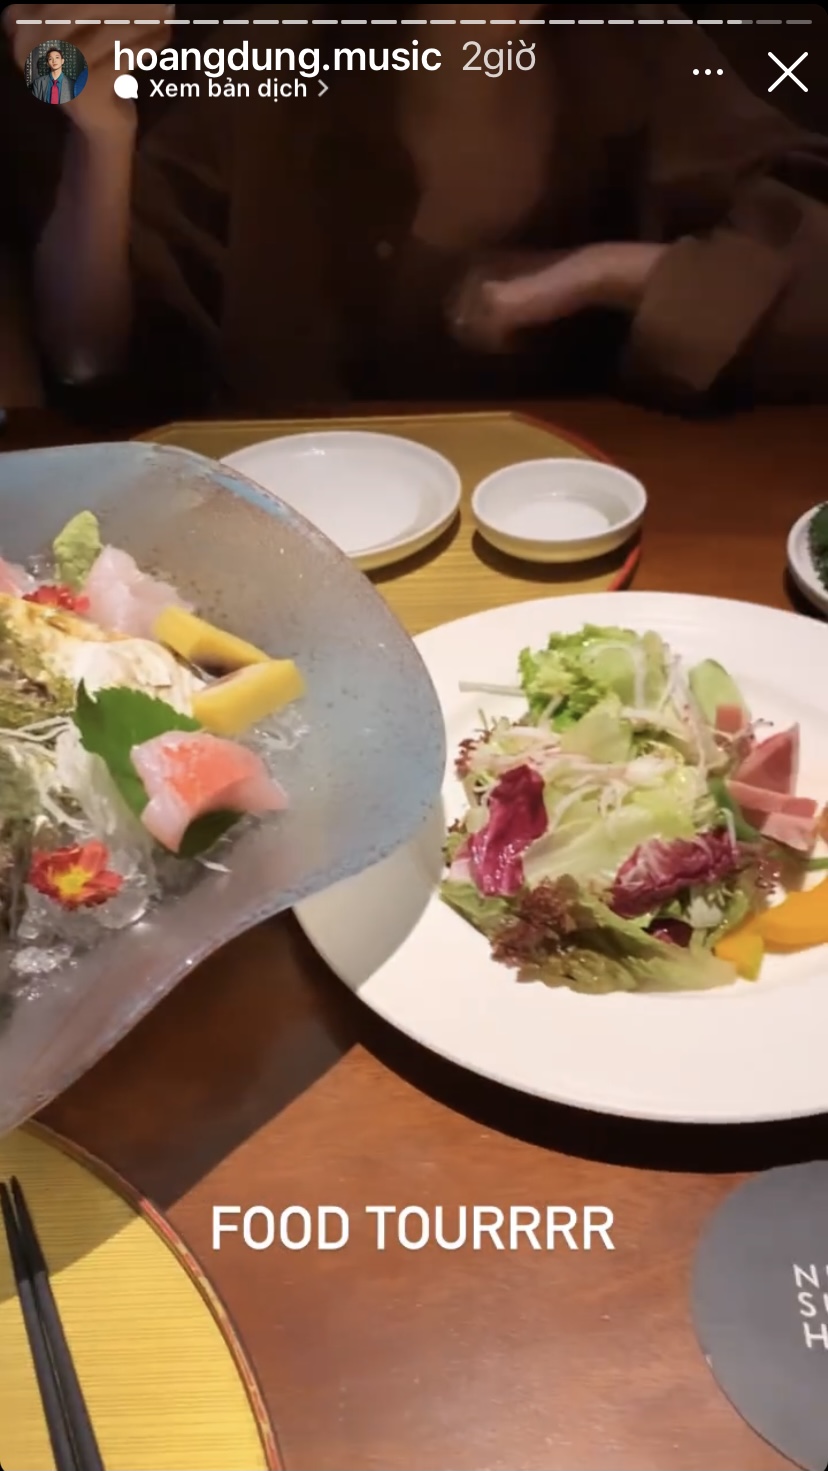 Food tour của ca sĩ Hoàng Dũng hôm nay bắt đầu bằng đĩa sashimi tươi sống bổ dưỡng...